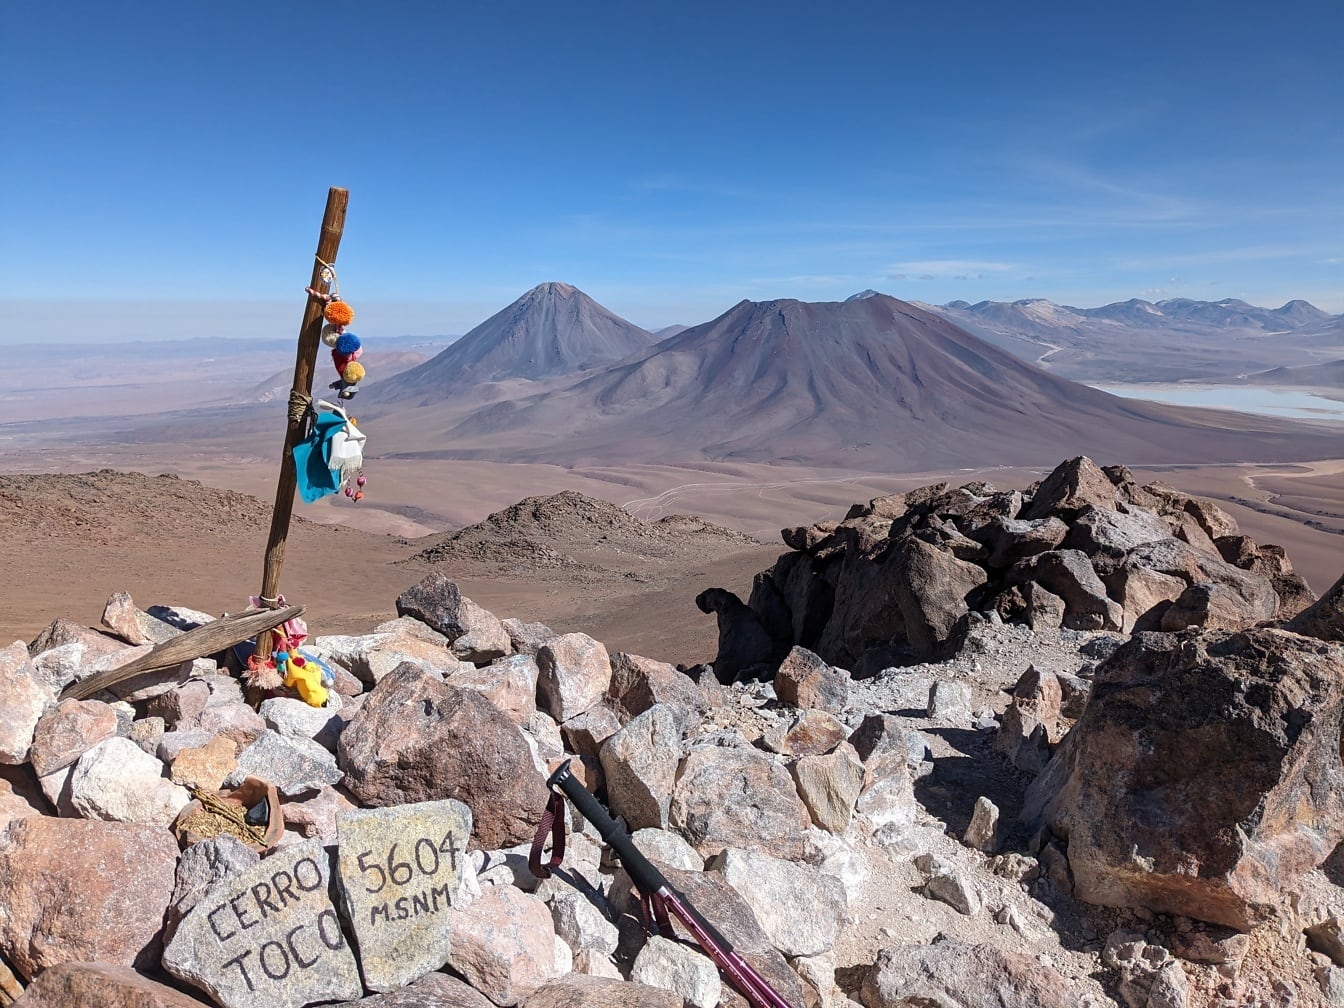 Pico de la montaña Cerro Toco en Chile a 5604 metros sobre el nivel del mar